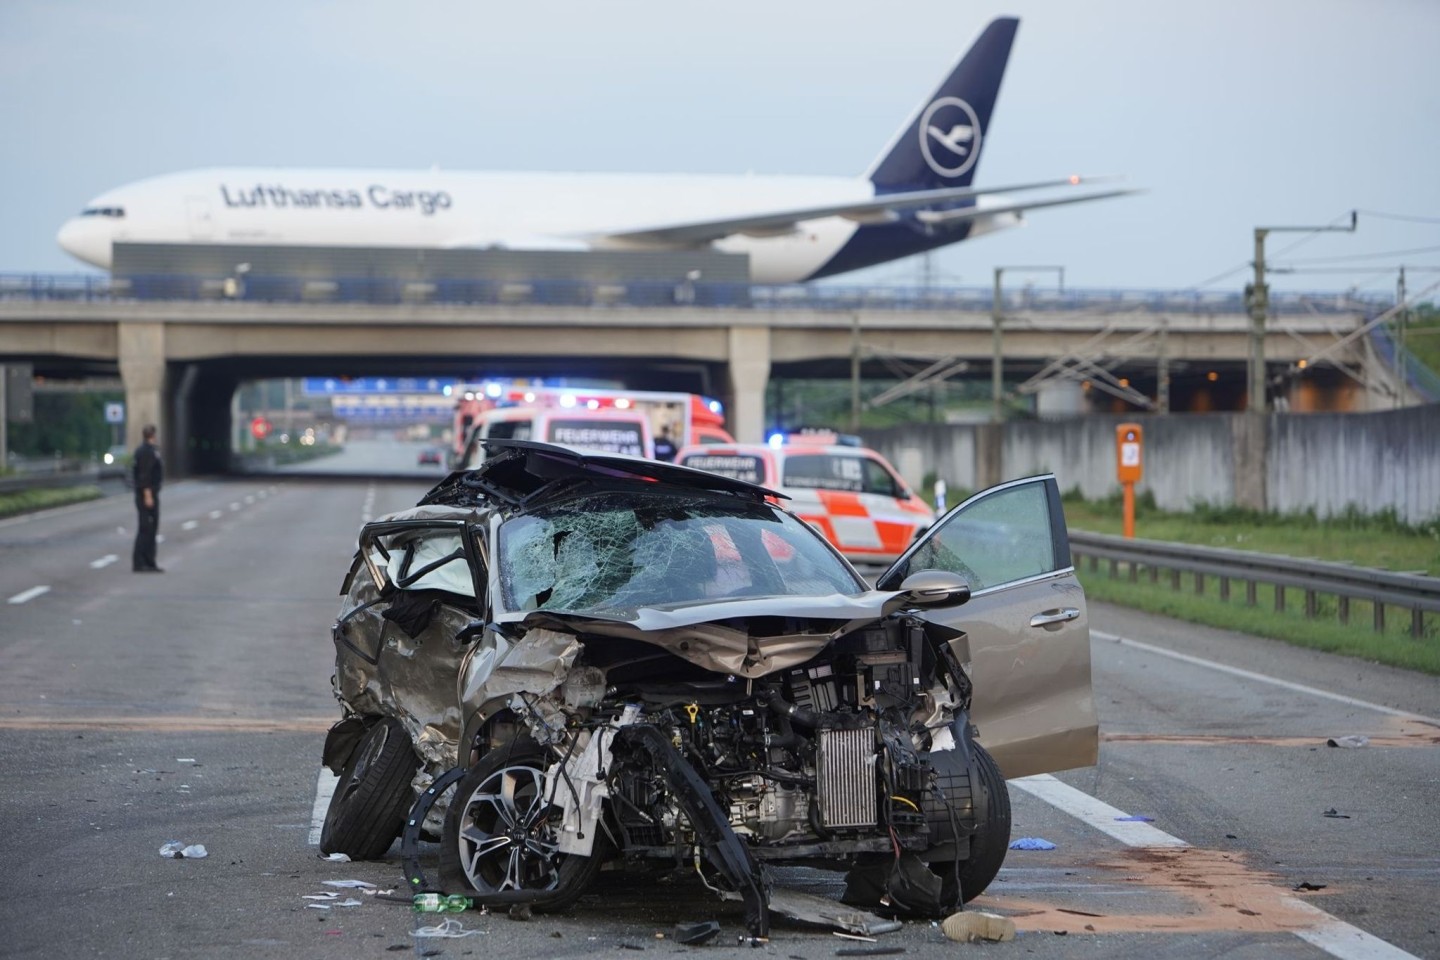 Bei zwei Unfällen auf der A3 in der Nähe des Frankfurter Flughafens sind mehrere Menschen schwer verletzt worden, eine Person tödlich.